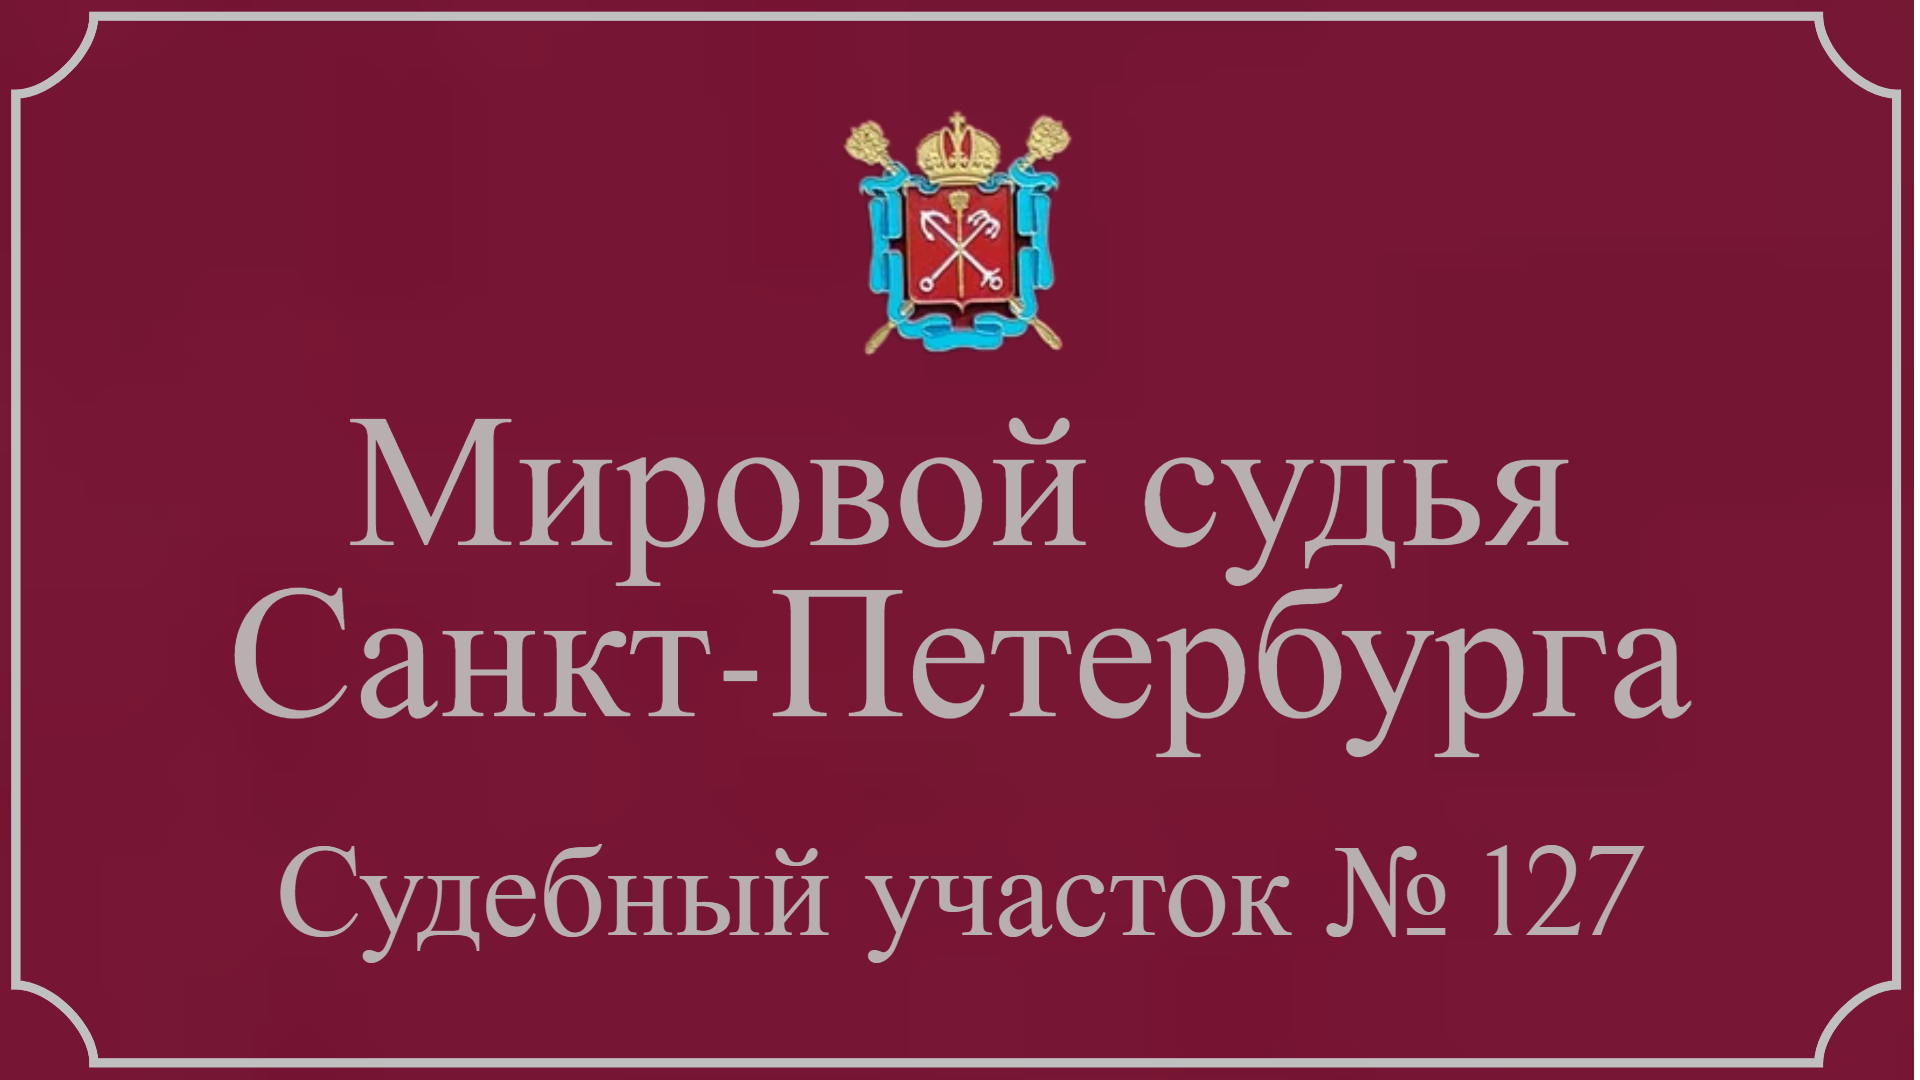 Информация по 127 судебному участку в Санкт-Петербурге.